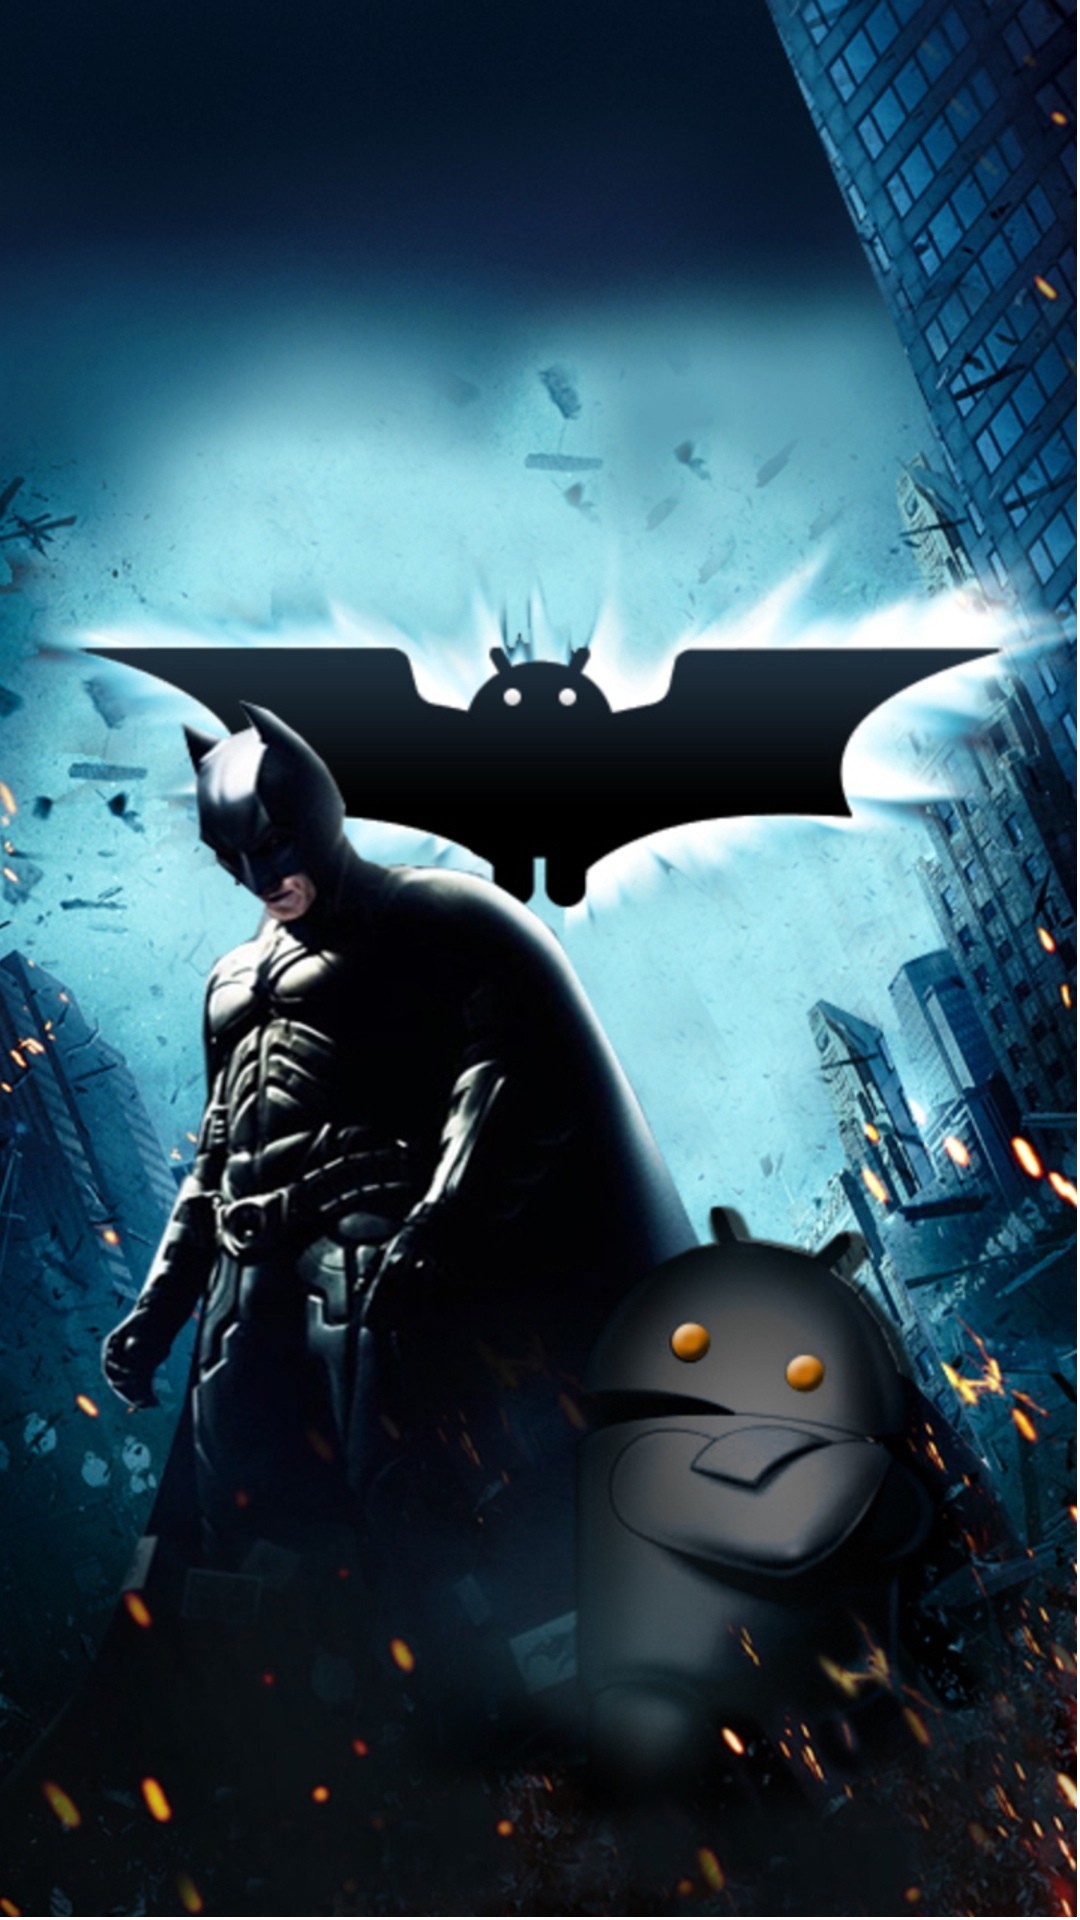 1080x1920 Batman Cell Phone Wallpaper